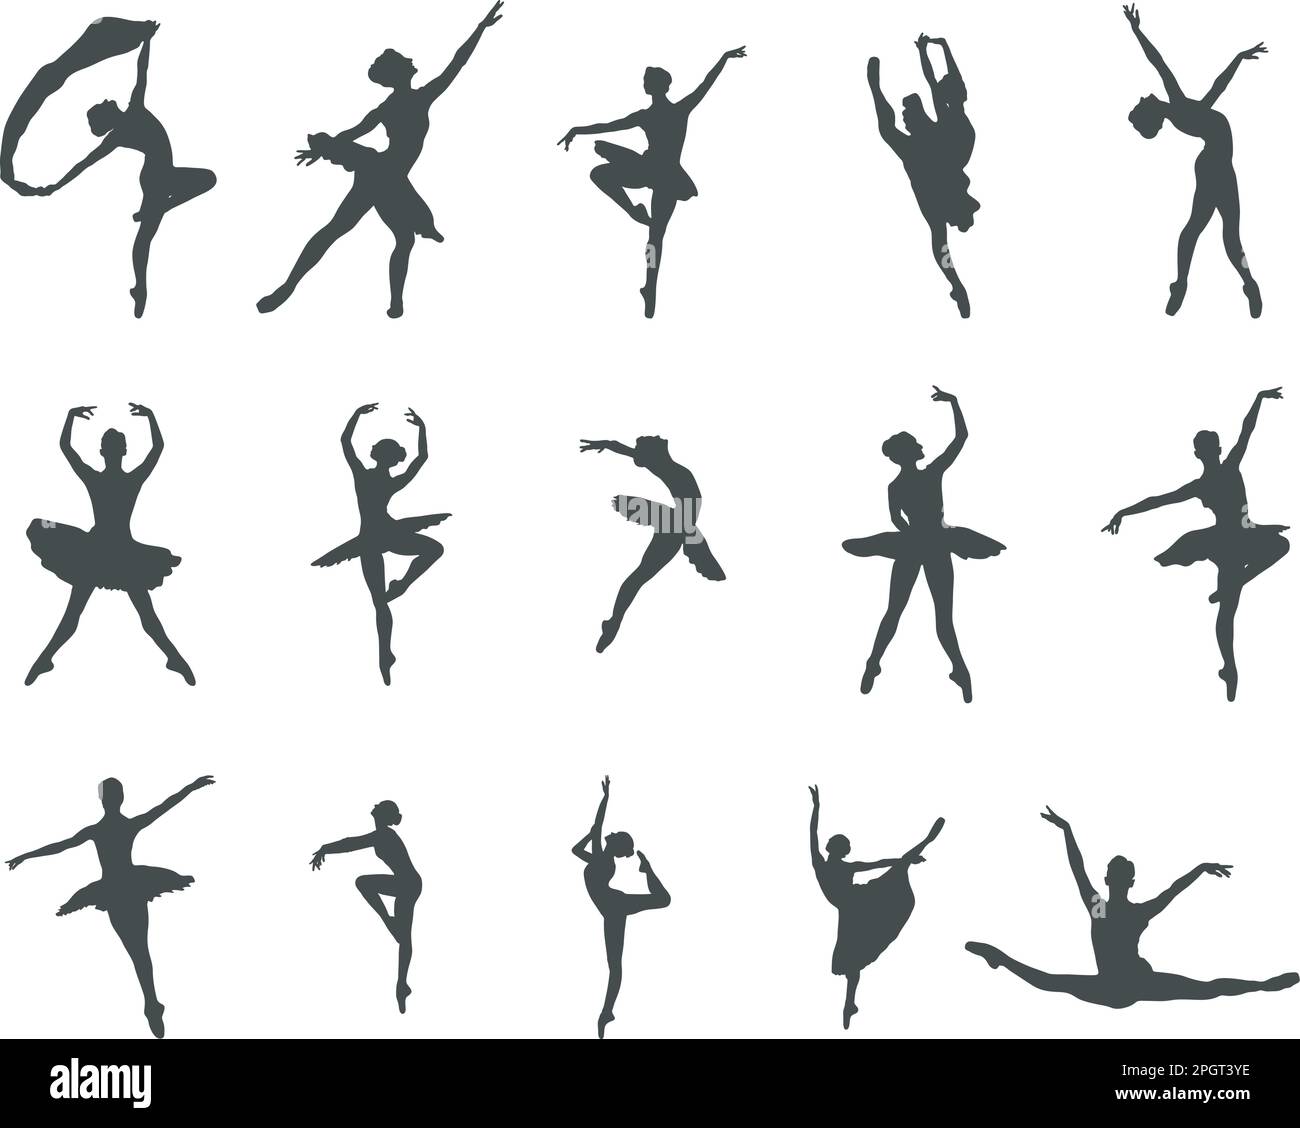 Silueta de bailarina, siluetas de bailarina, bailarina SVG, vector de ...